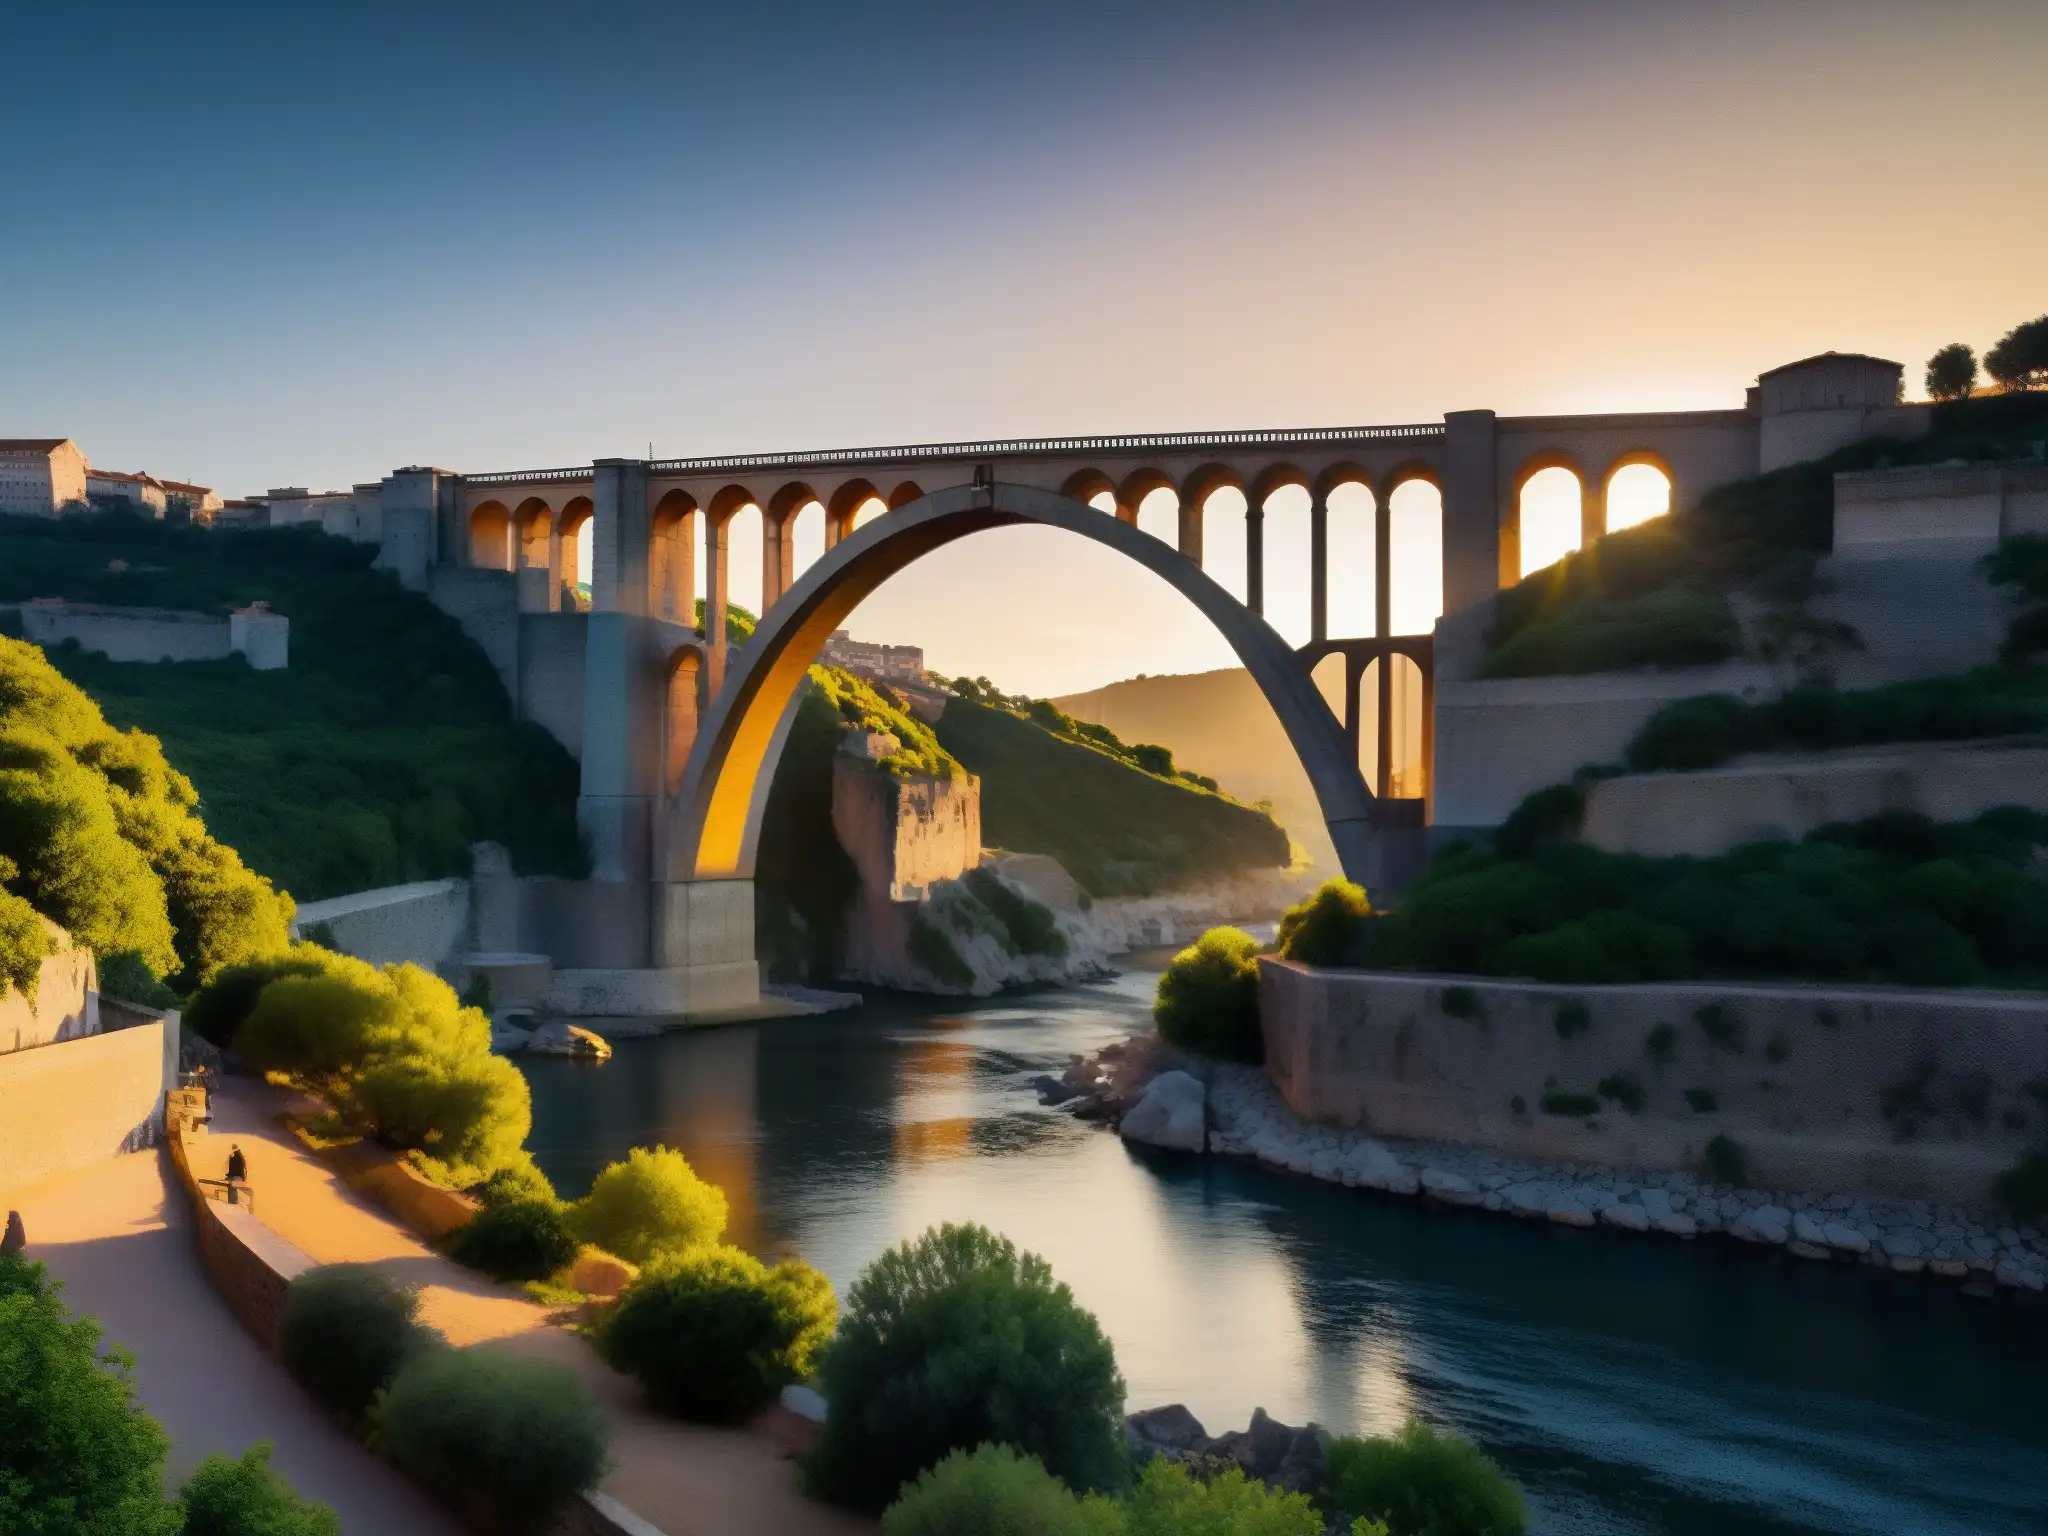 Imagen detallada del Puente de Metlac al anochecer, mostrando su atmósfera misteriosa y las leyendas de guerra y apariciones que lo rodean